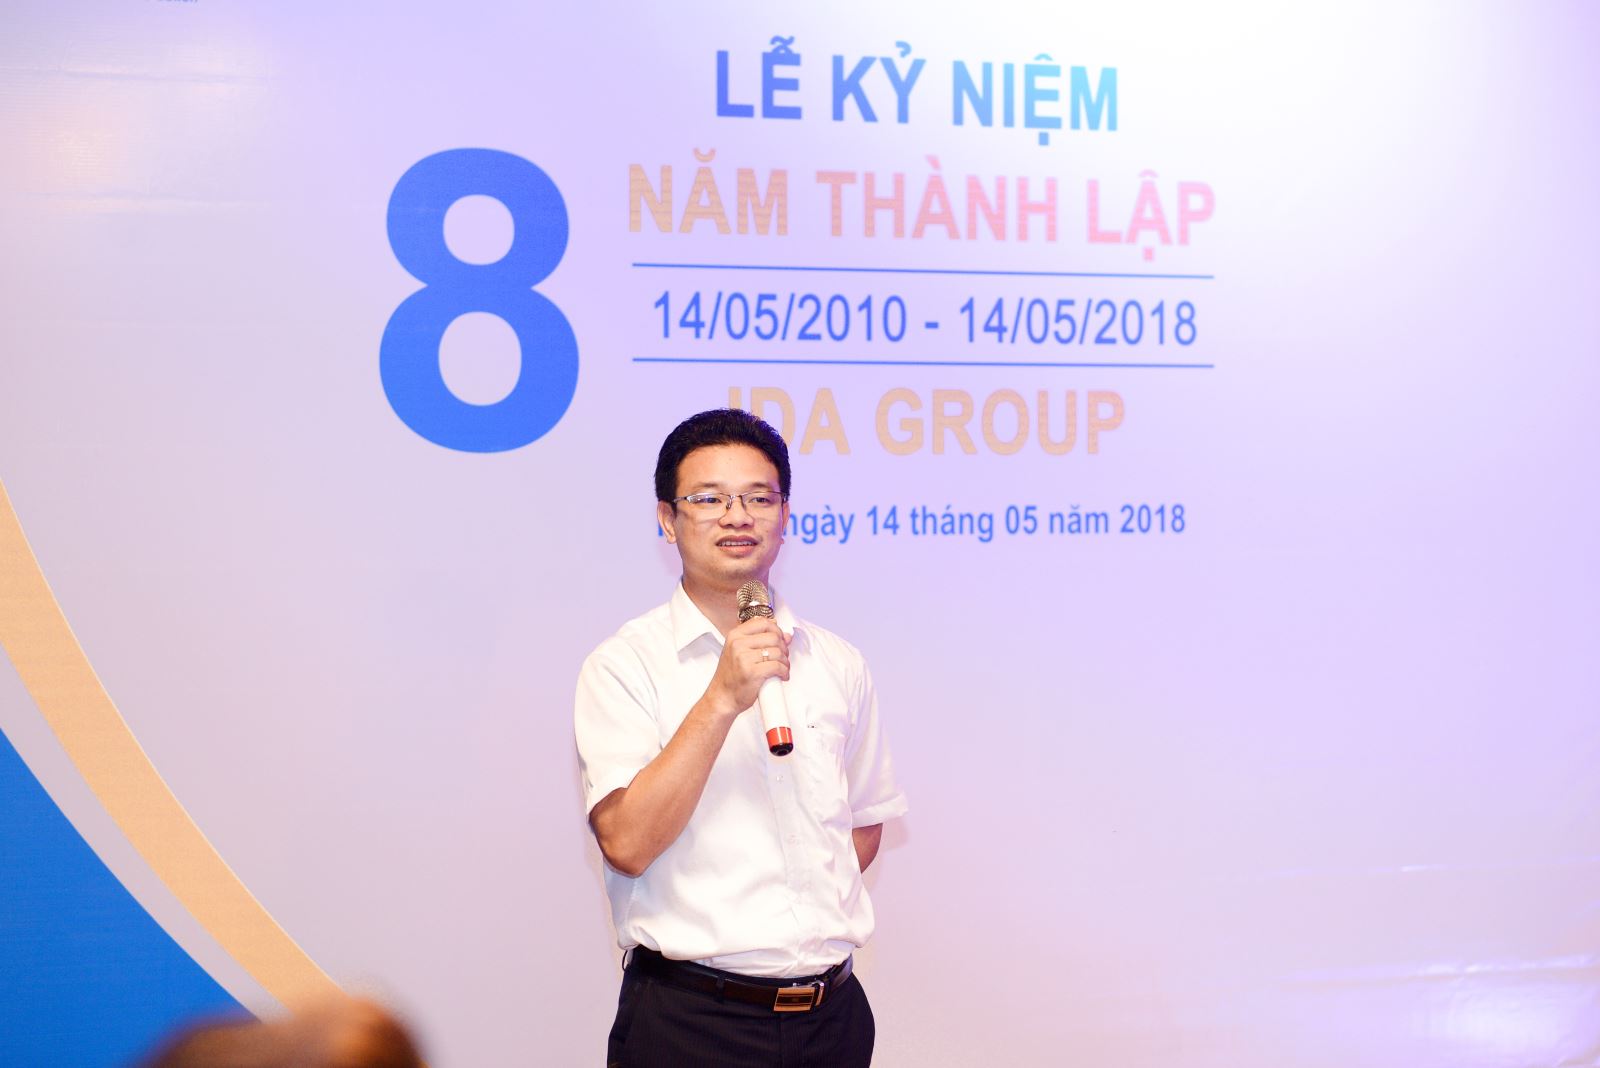 Tổng giám đốc Nguyễn Xuân Bình mở màn cho buổi tiệc